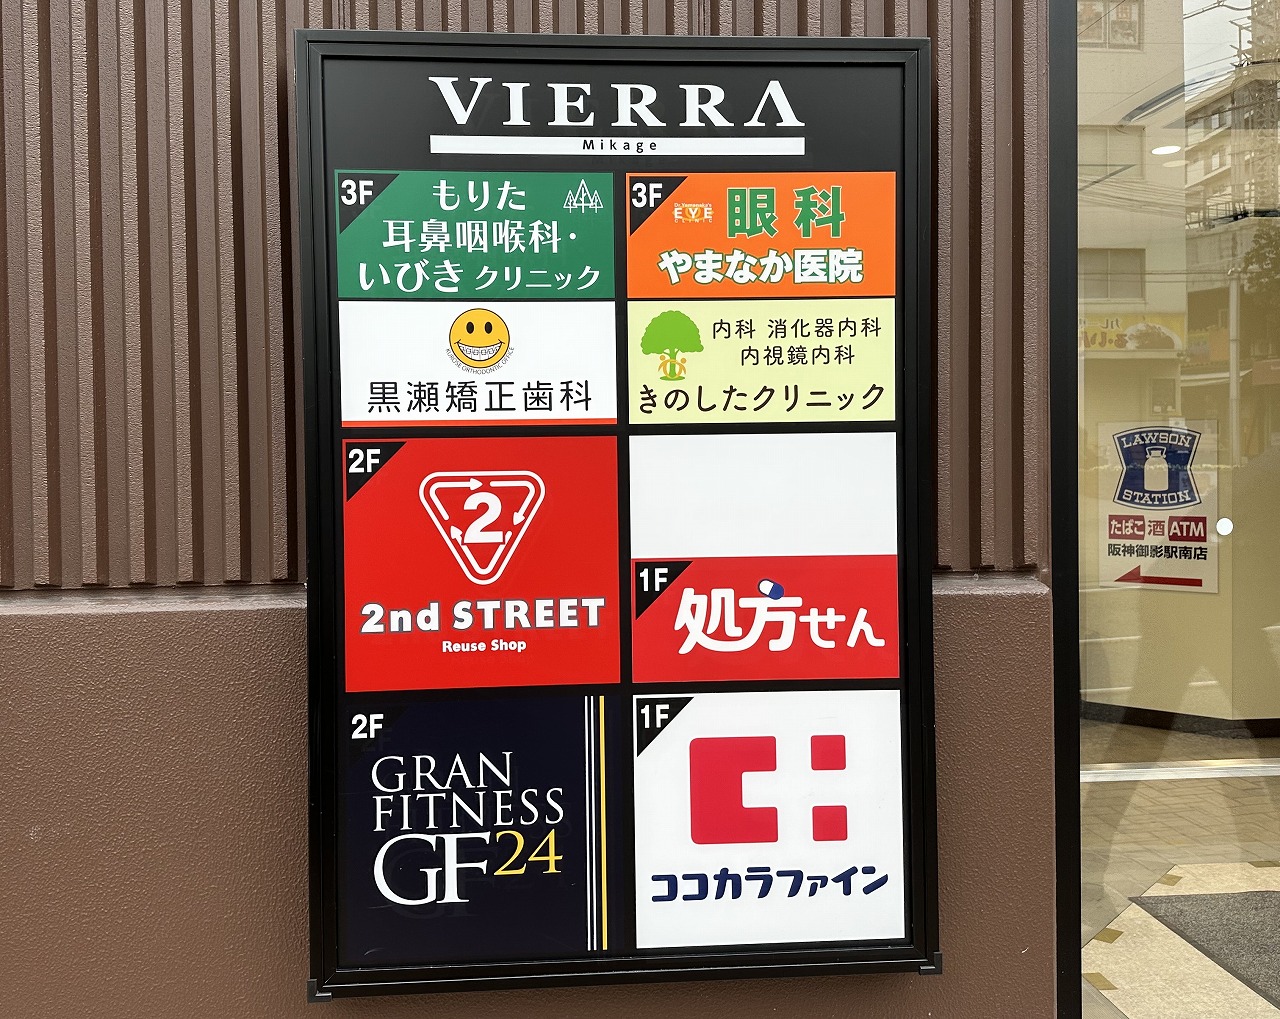 阪神御影駅南側「VIERRA(ビエラ)御影」